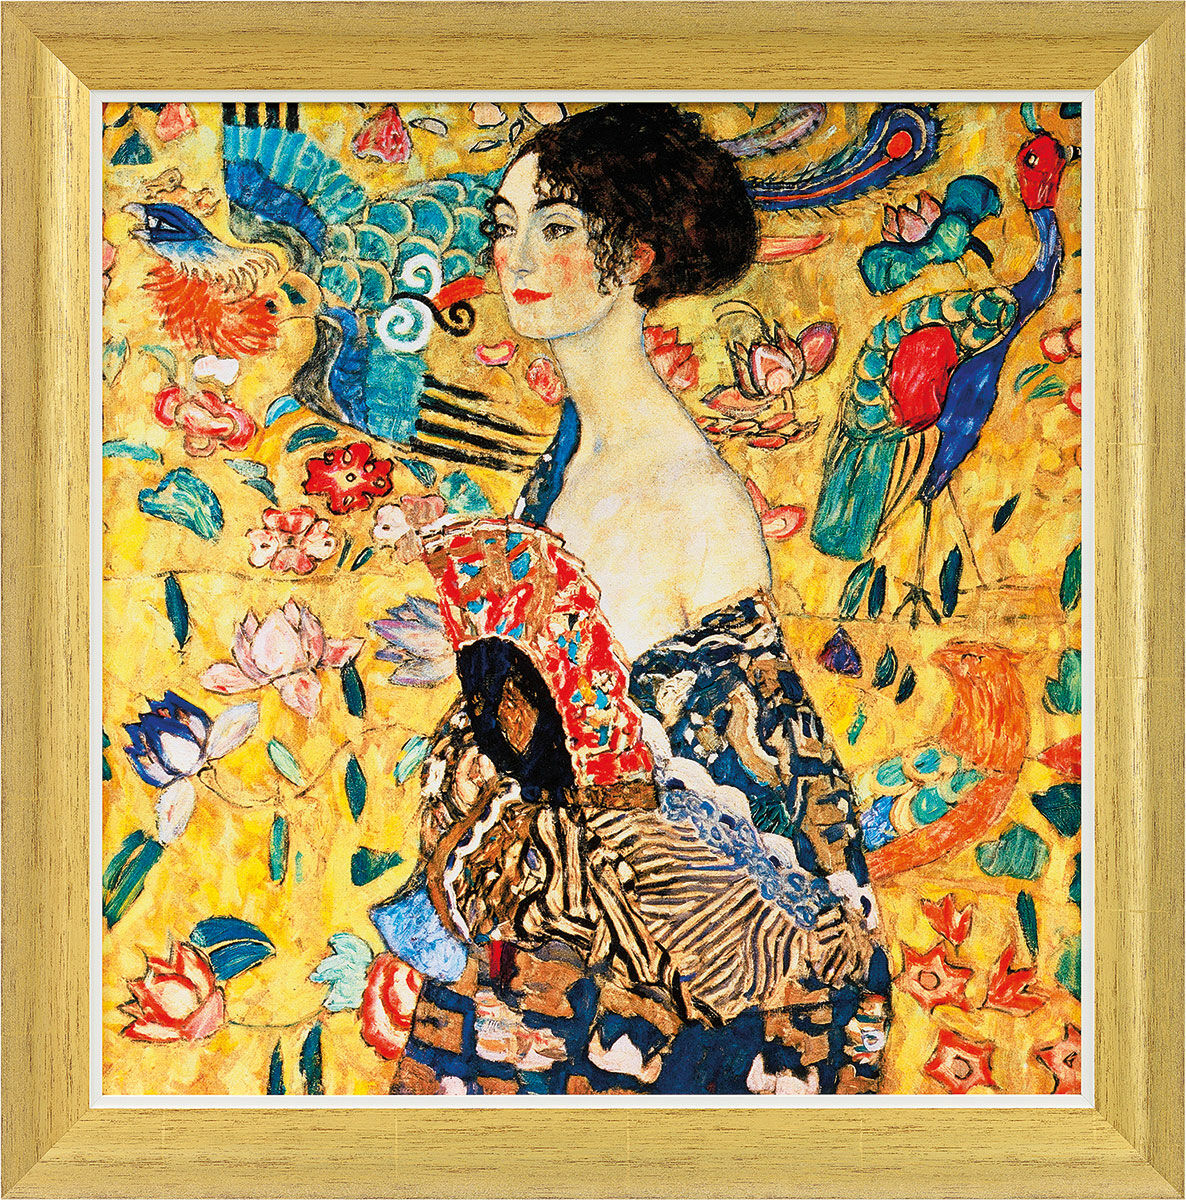 Billede "Dame med vifte" (1917/18), gylden indrammet version von Gustav Klimt